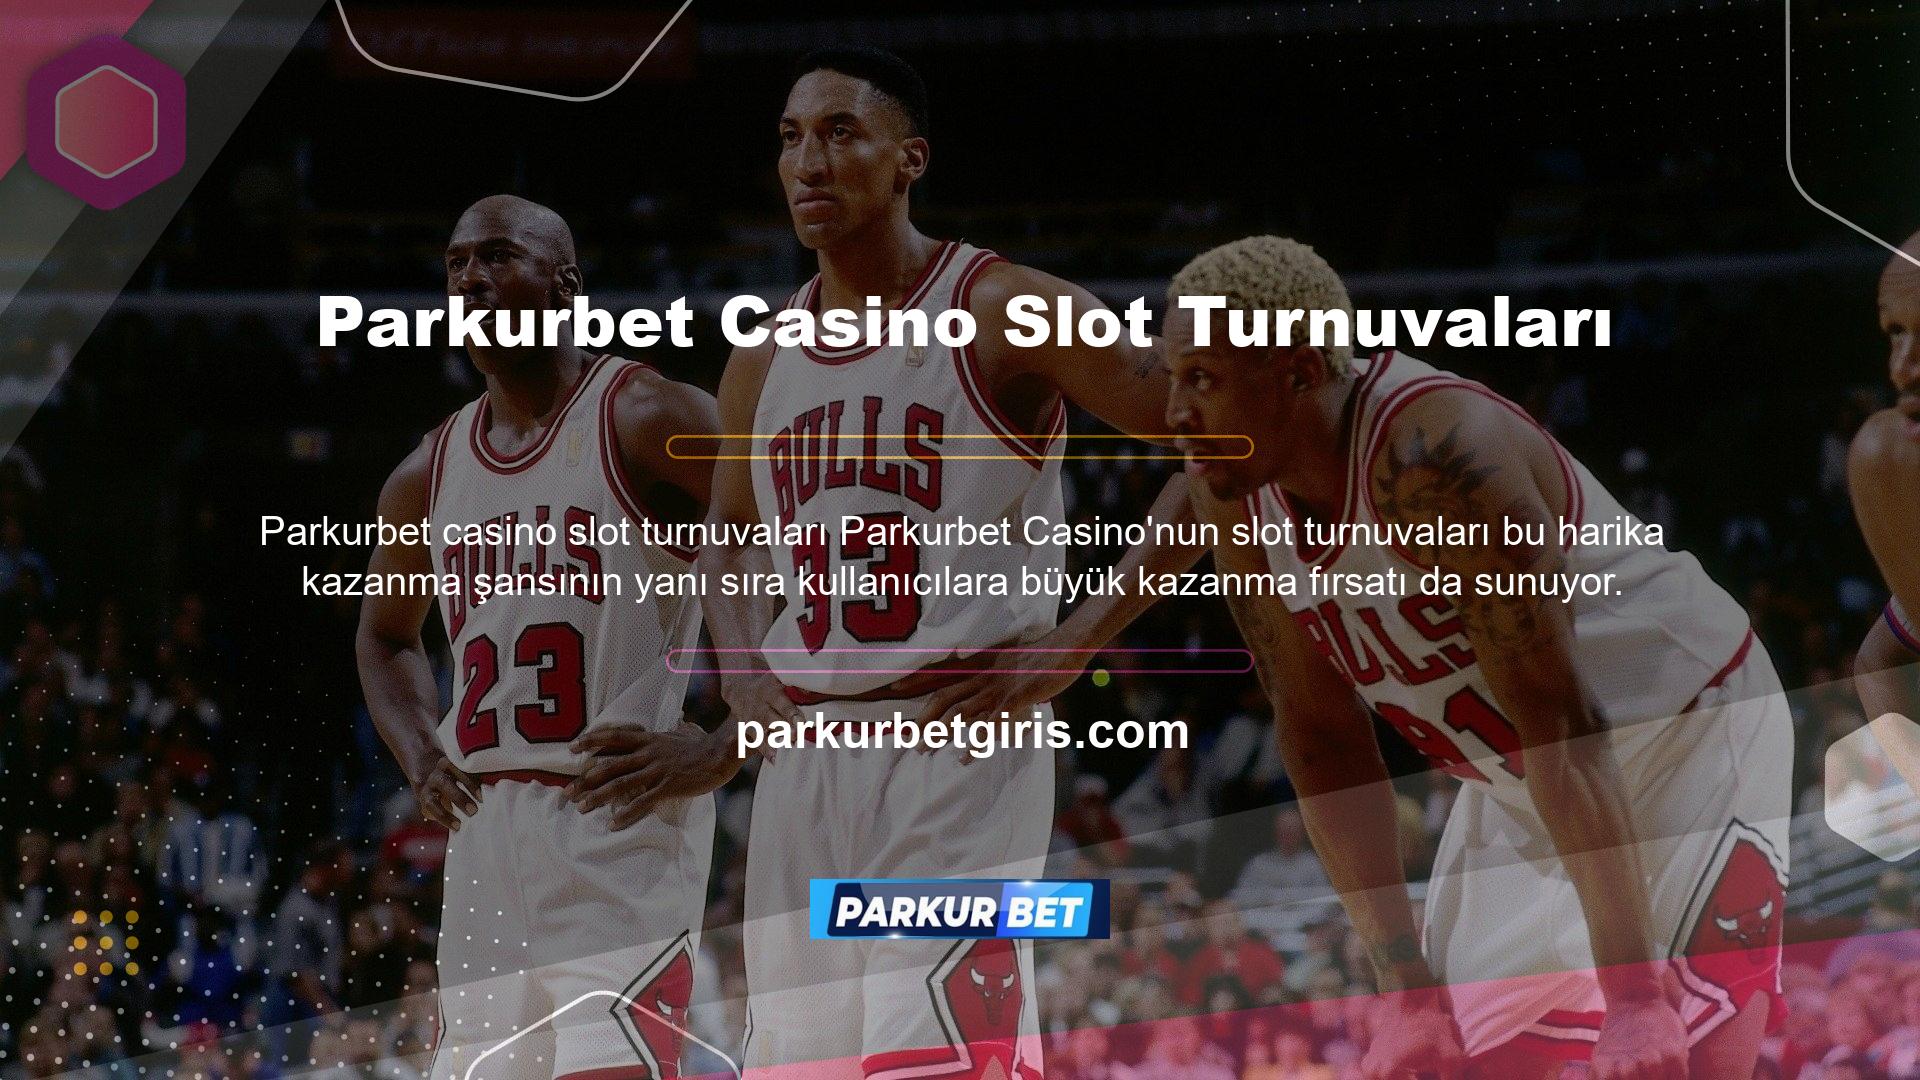 Turnuvalar sitenin promosyonları ve casino sayfalarında görüntülenebilir